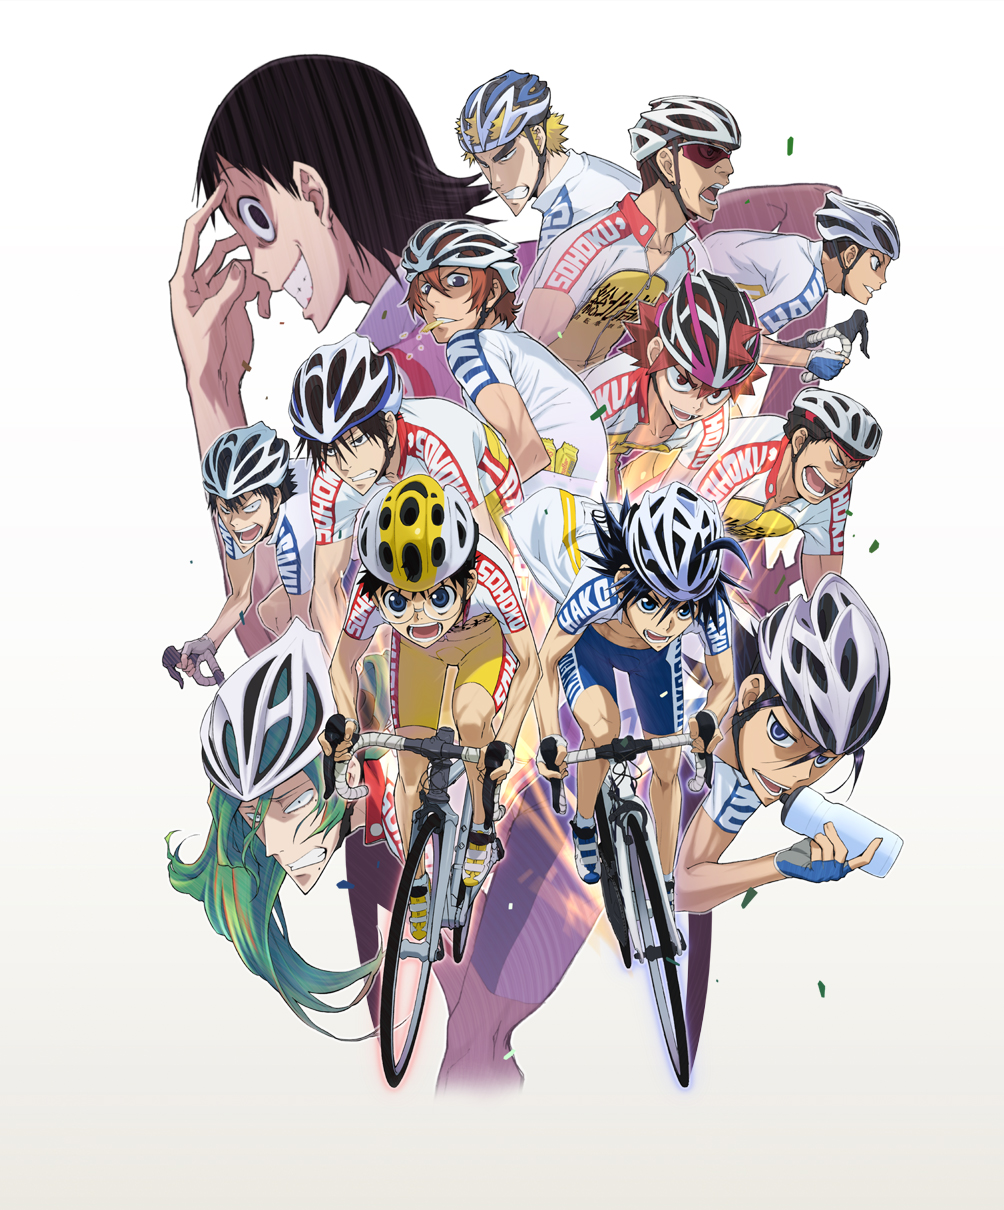 弱虫ペダル Yowamushi Pedal 23 壁紙 厳選アニメ壁紙 アルチビオ Anime Wallpaper